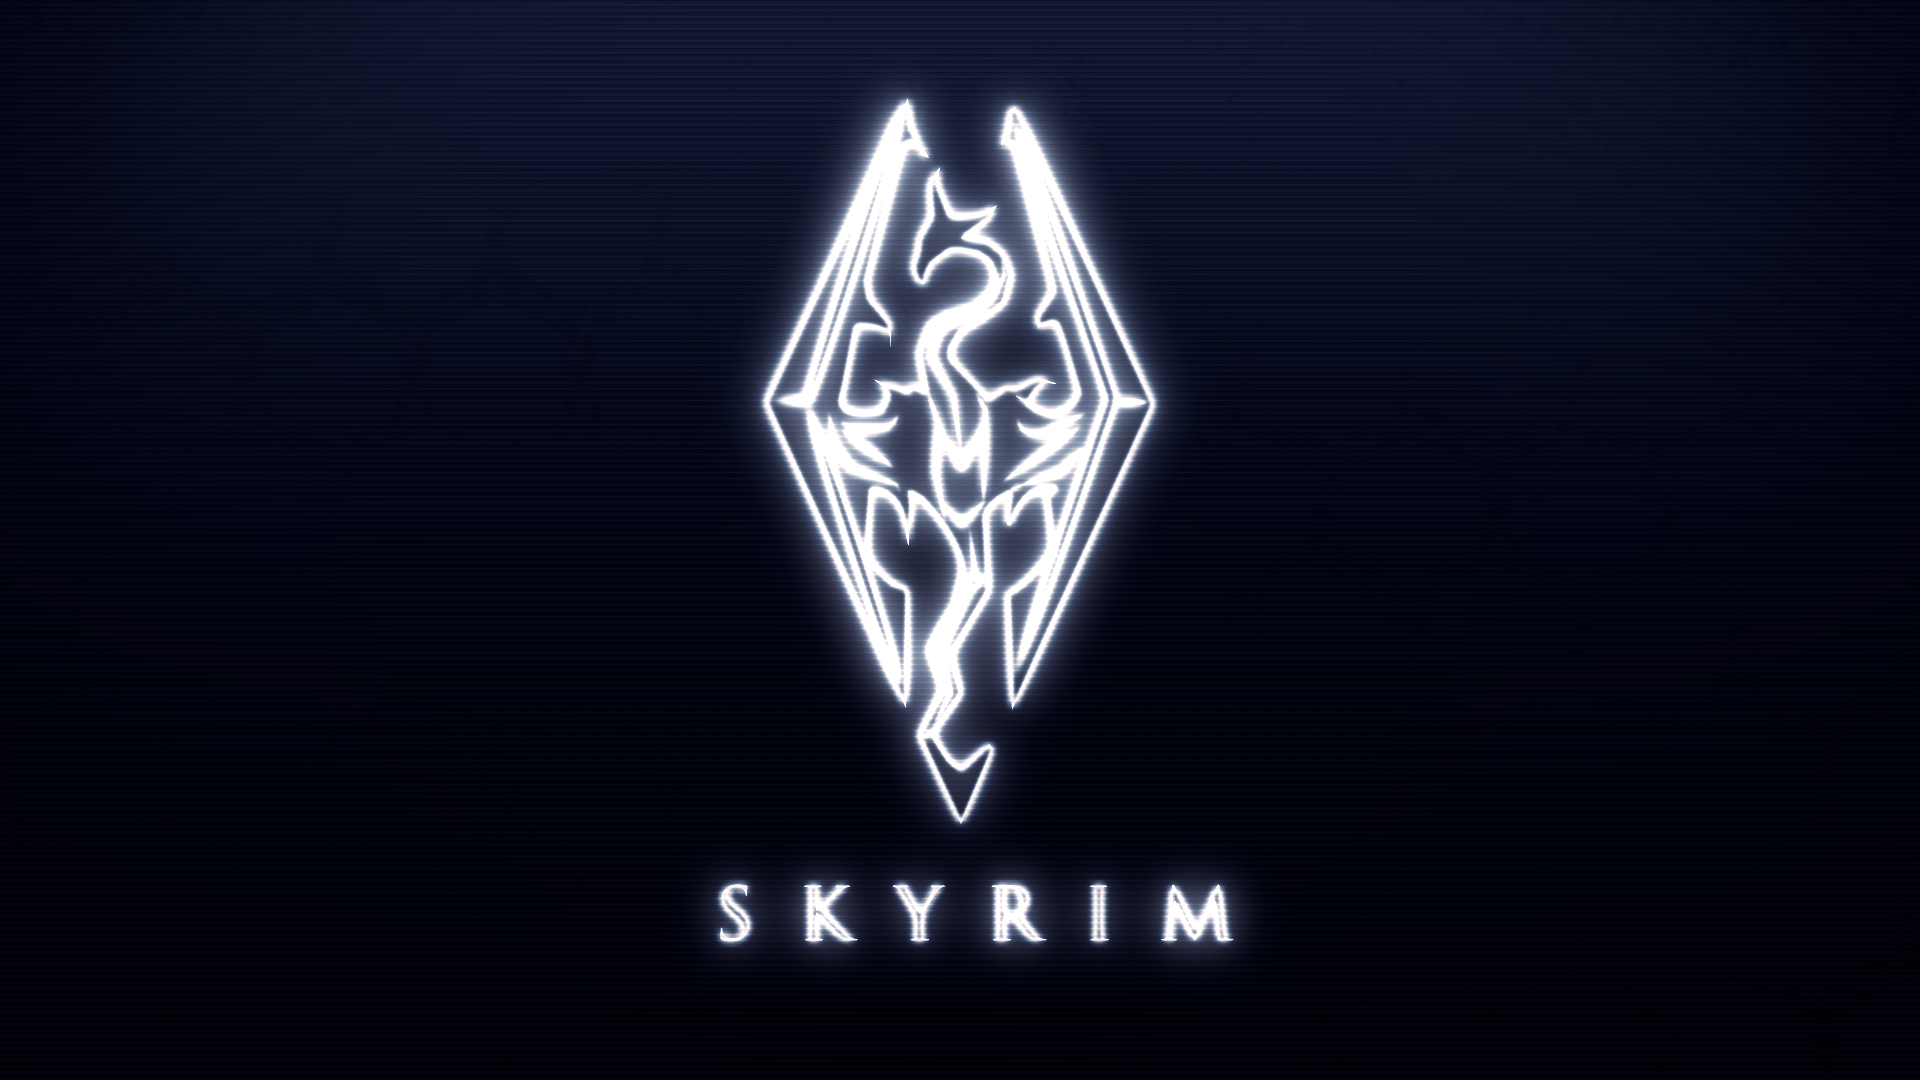 Skyrim Logo Wallpapers - Wallpaper Cave 945